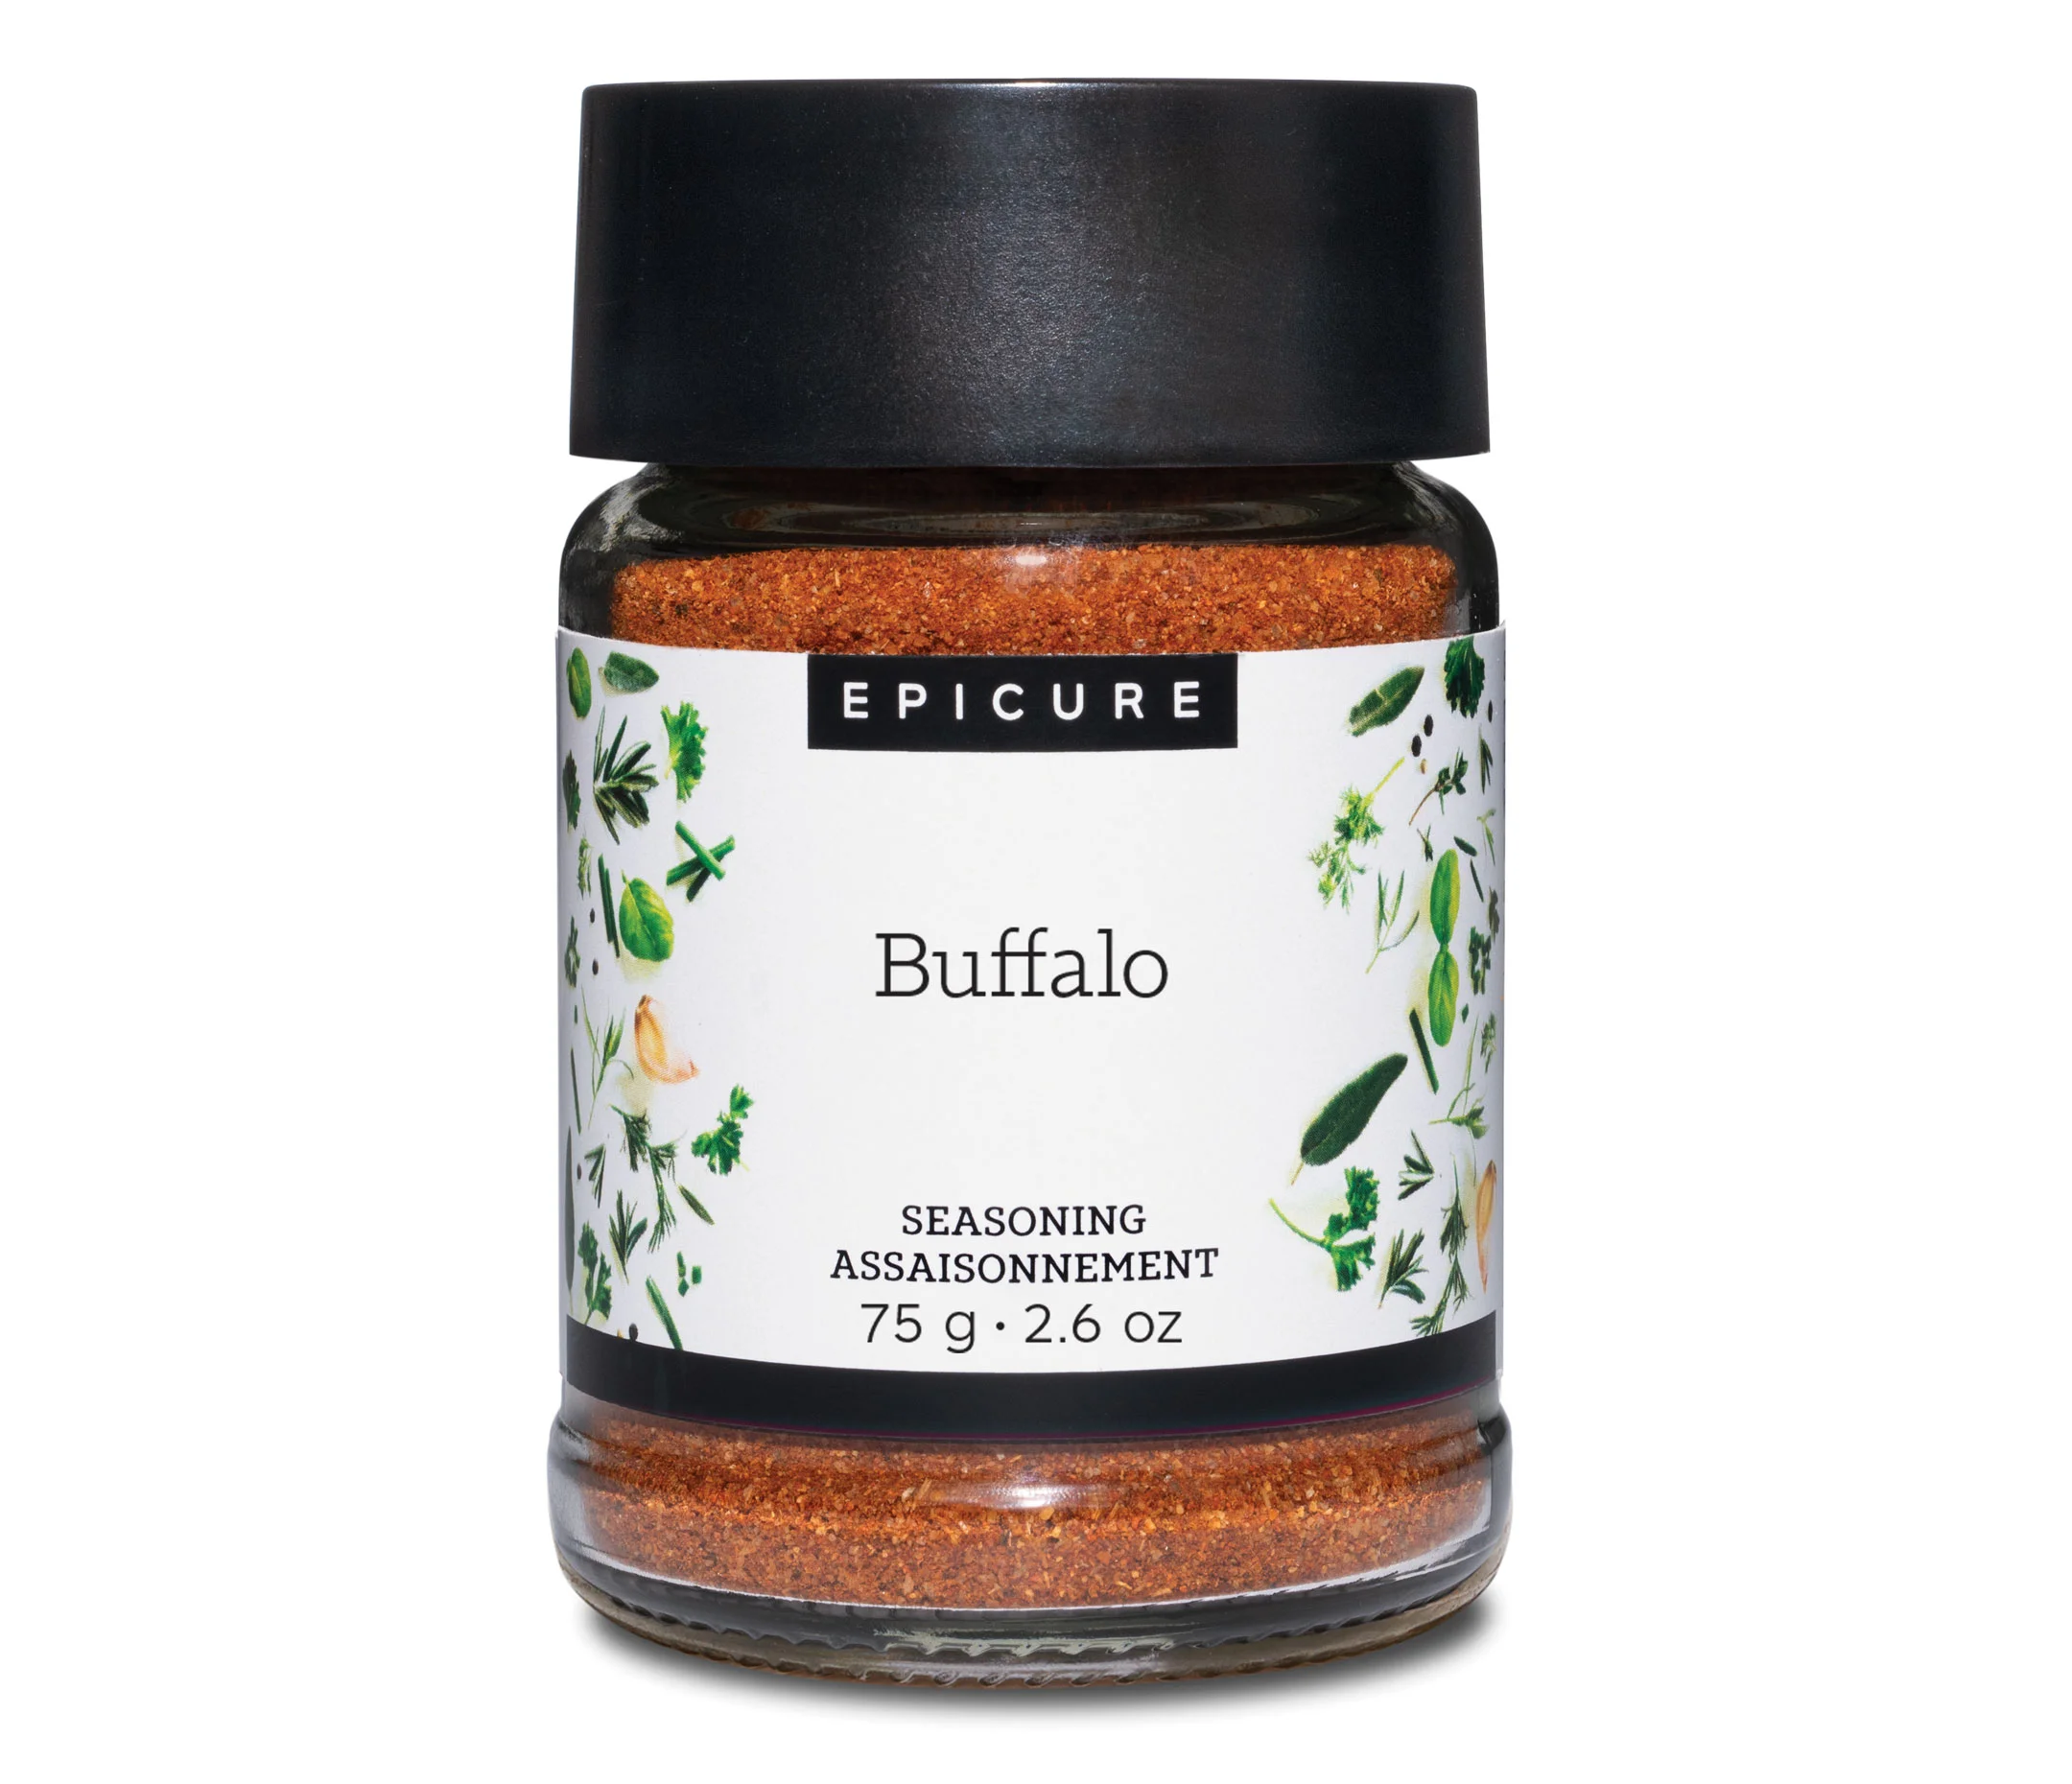 Buffalo Seasoning